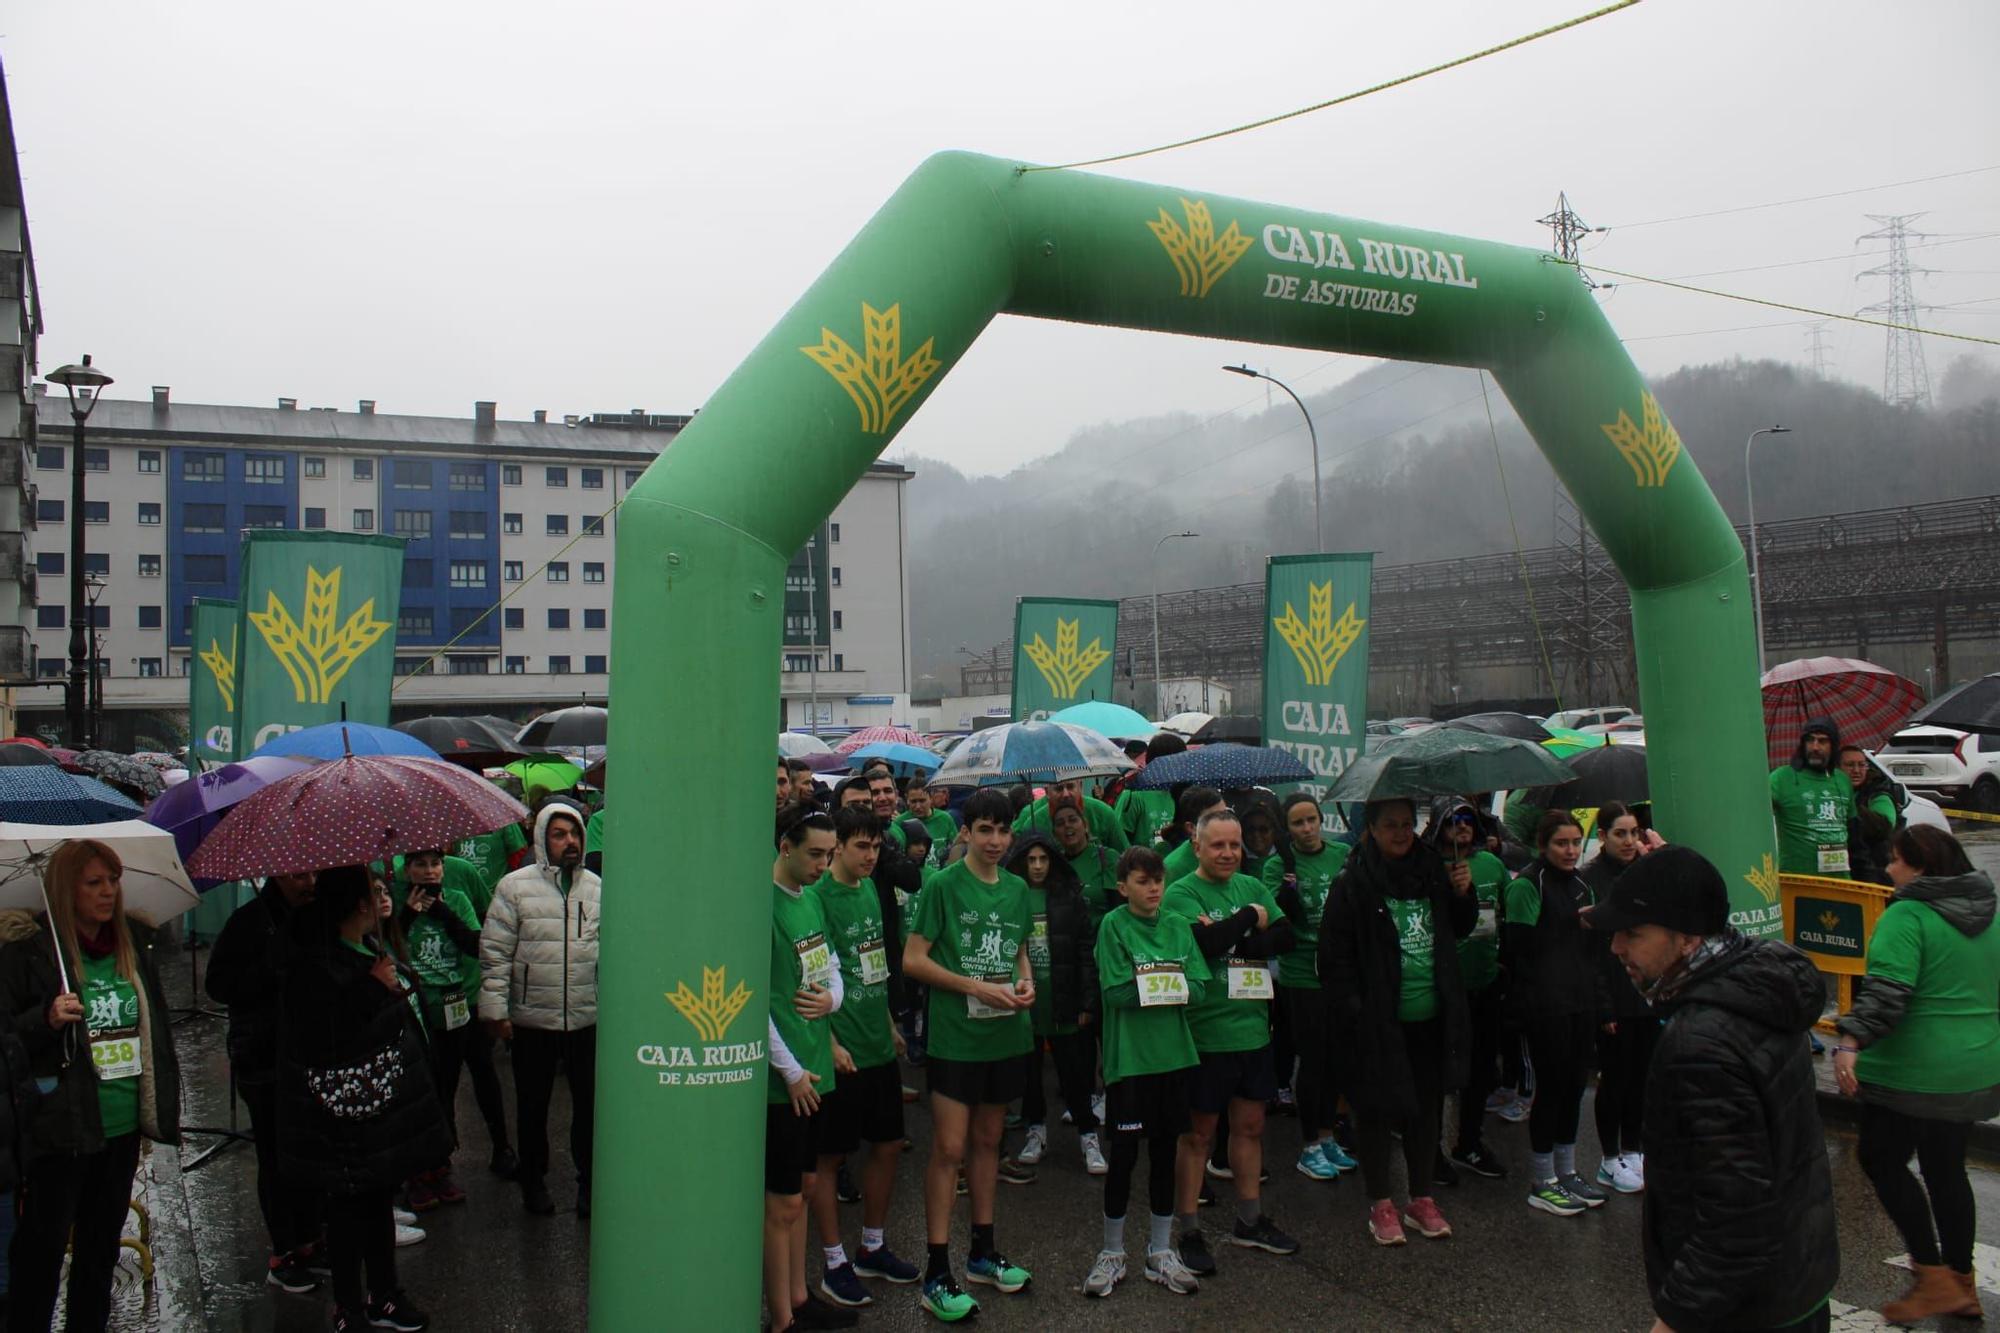 Así fue la carrera contra el cáncer en Langreo: Medio millar de valientes desafían a la lluvia por una buena causa